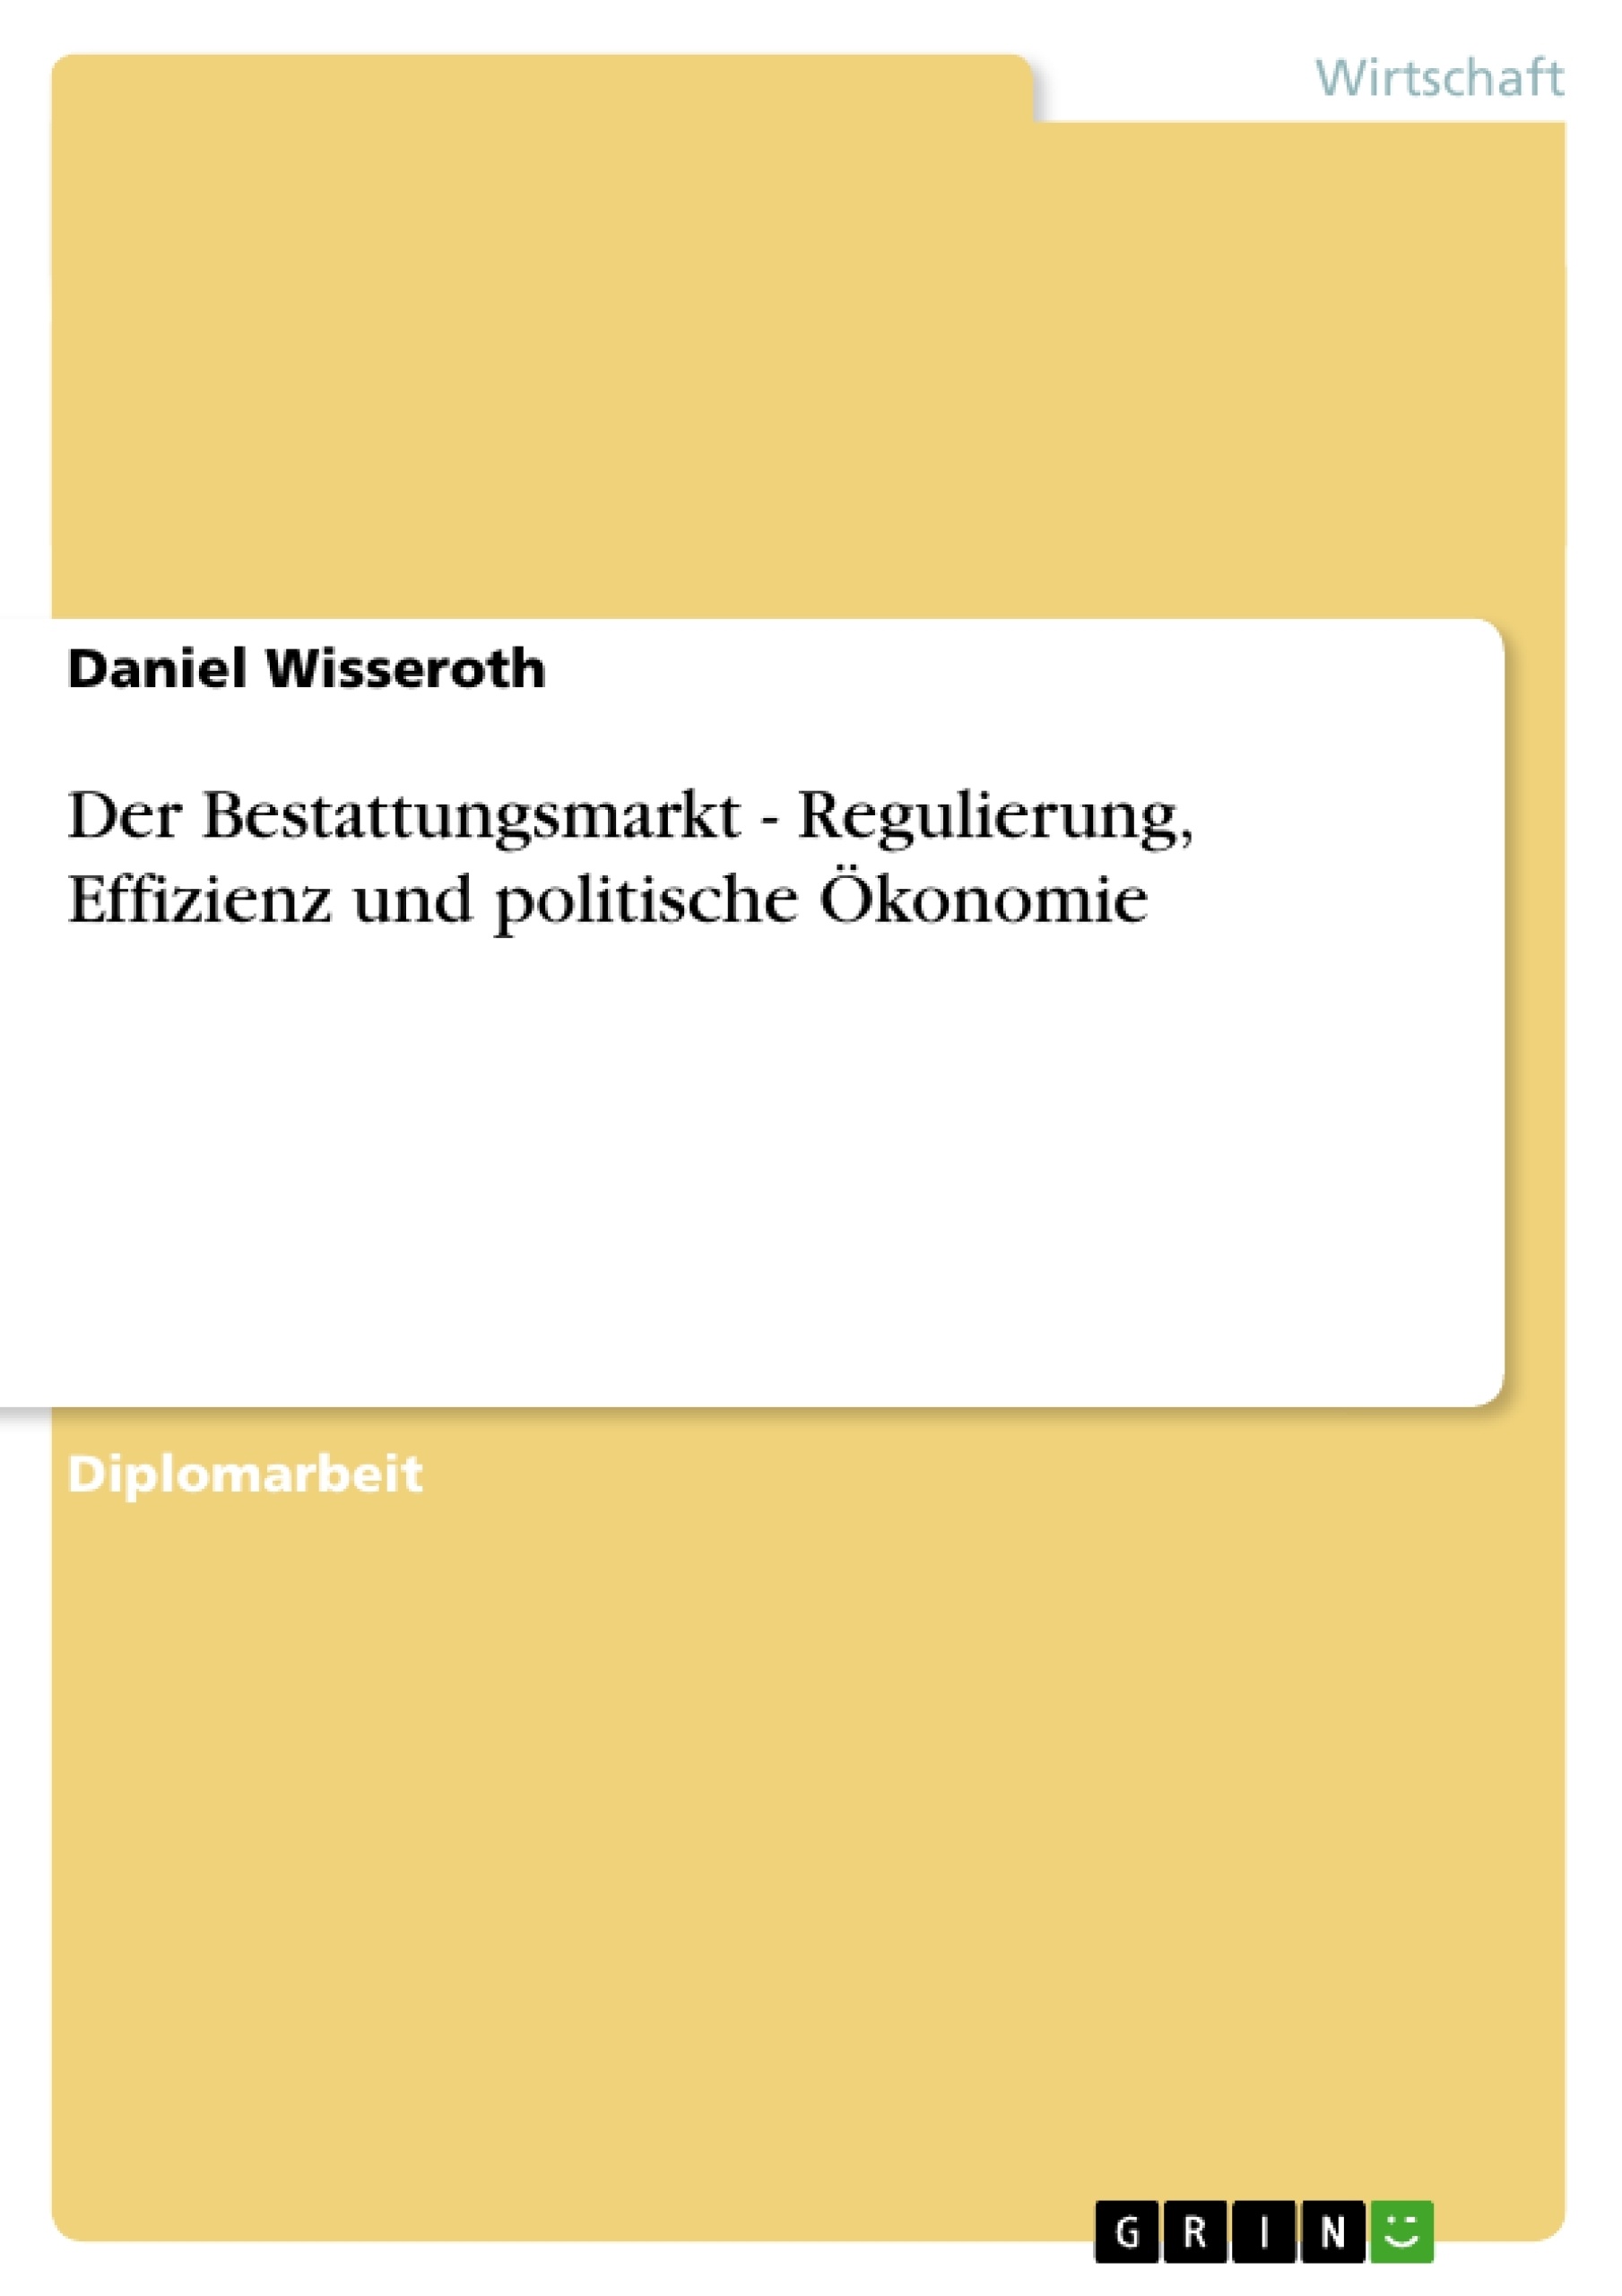 Title: Der Bestattungsmarkt - Regulierung, Effizienz und politische Ökonomie